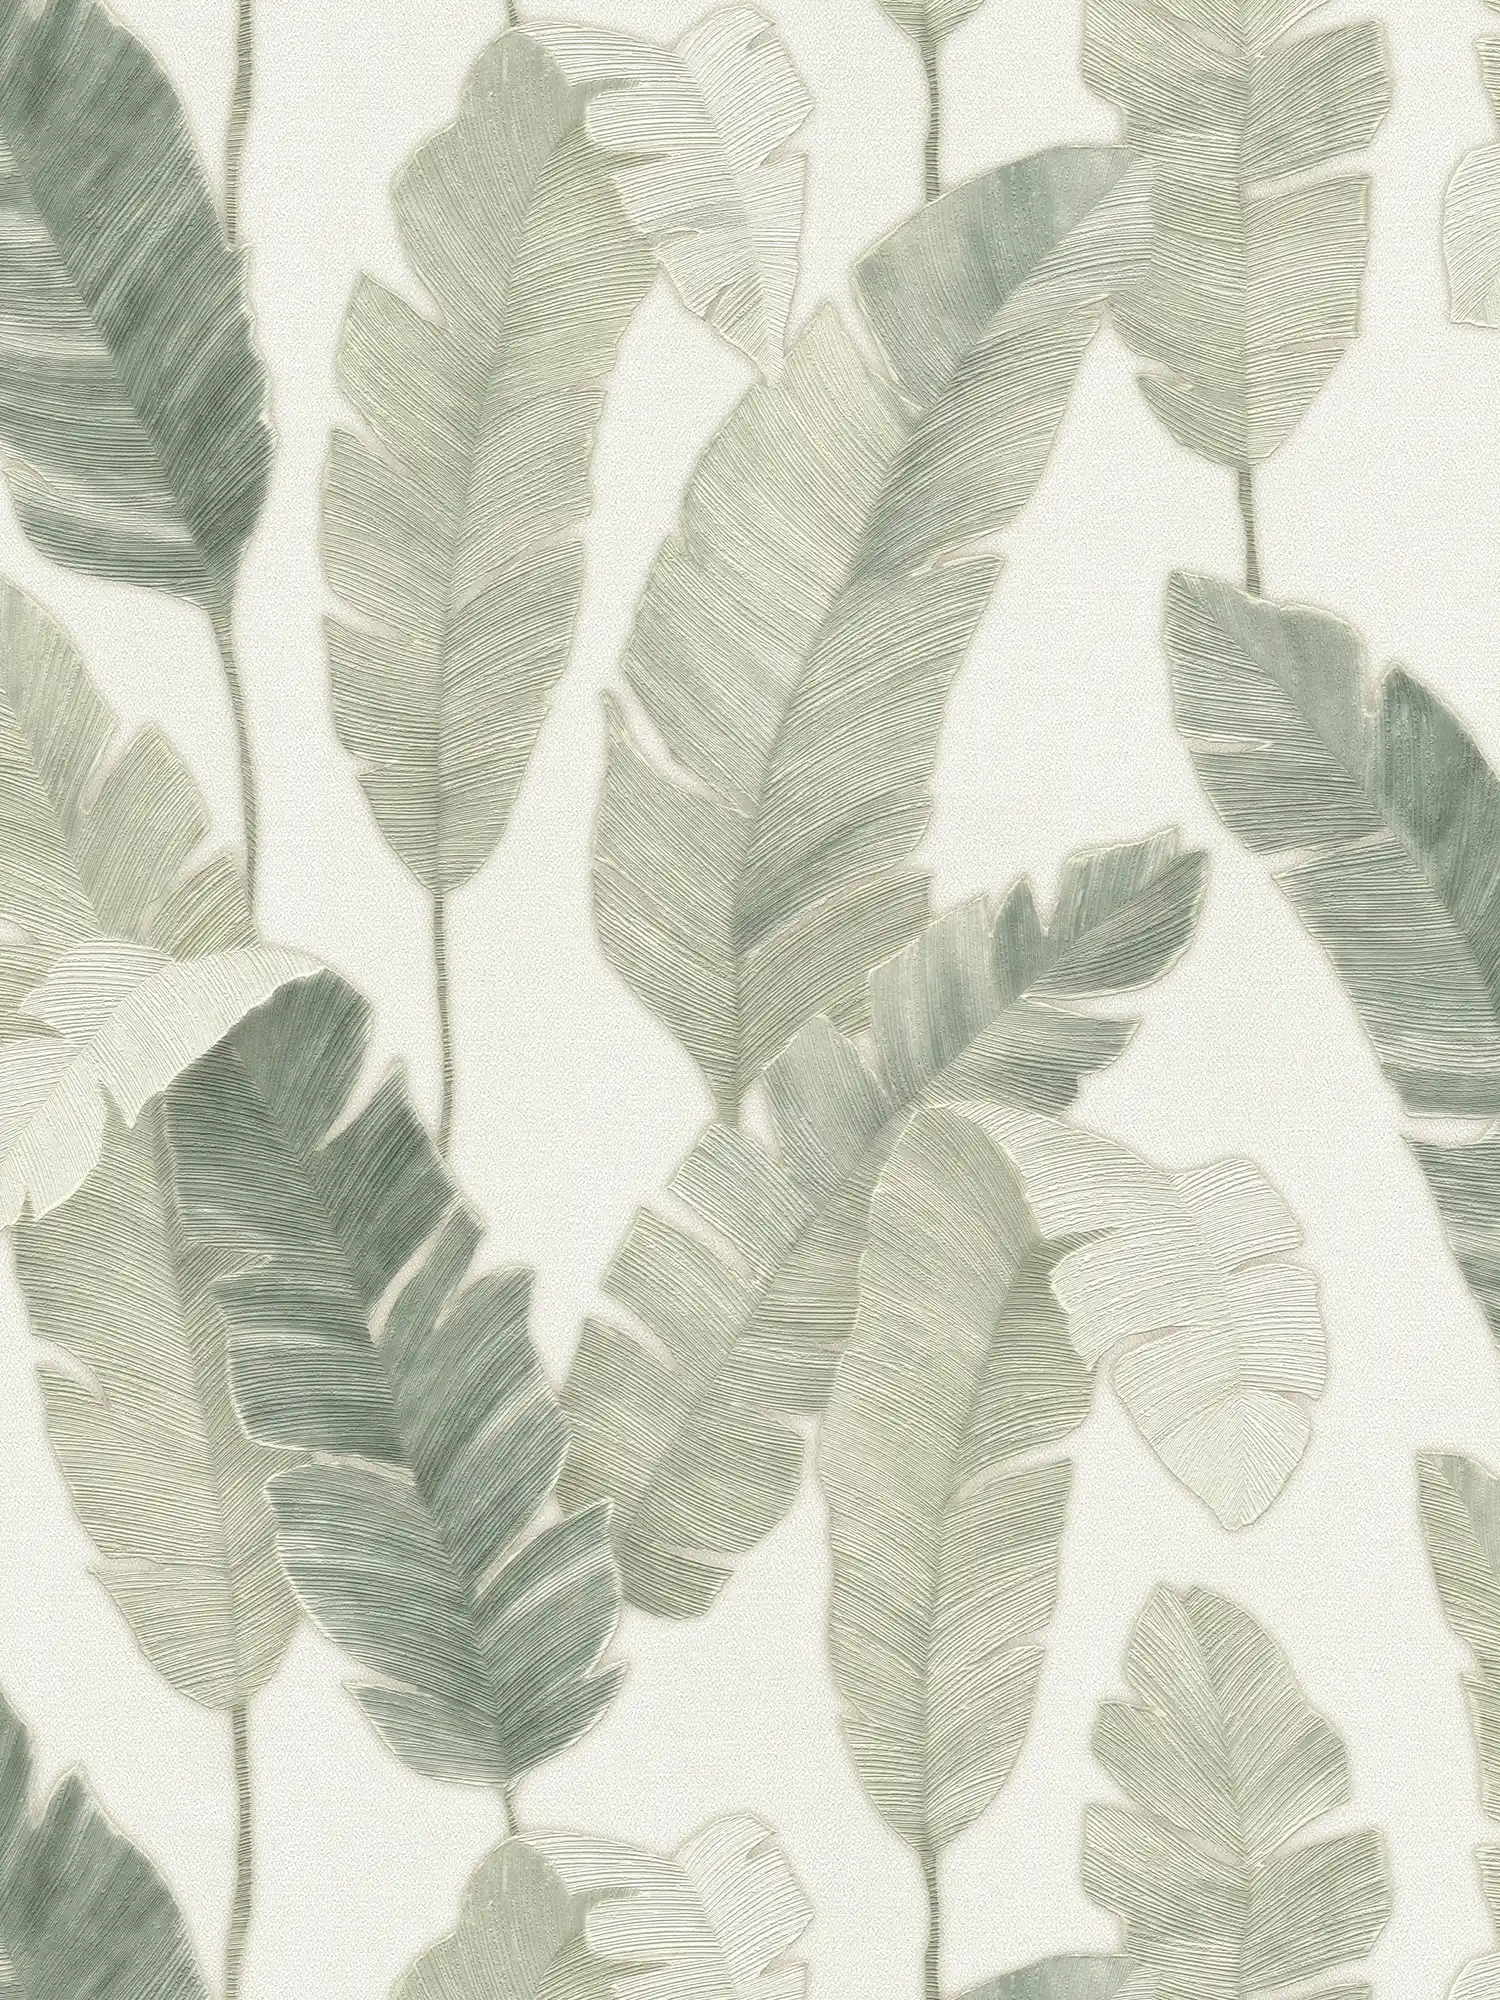         Papier peint intissé avec des feuilles de palmier dans une couleur claire - blanc, vert, bleu
    